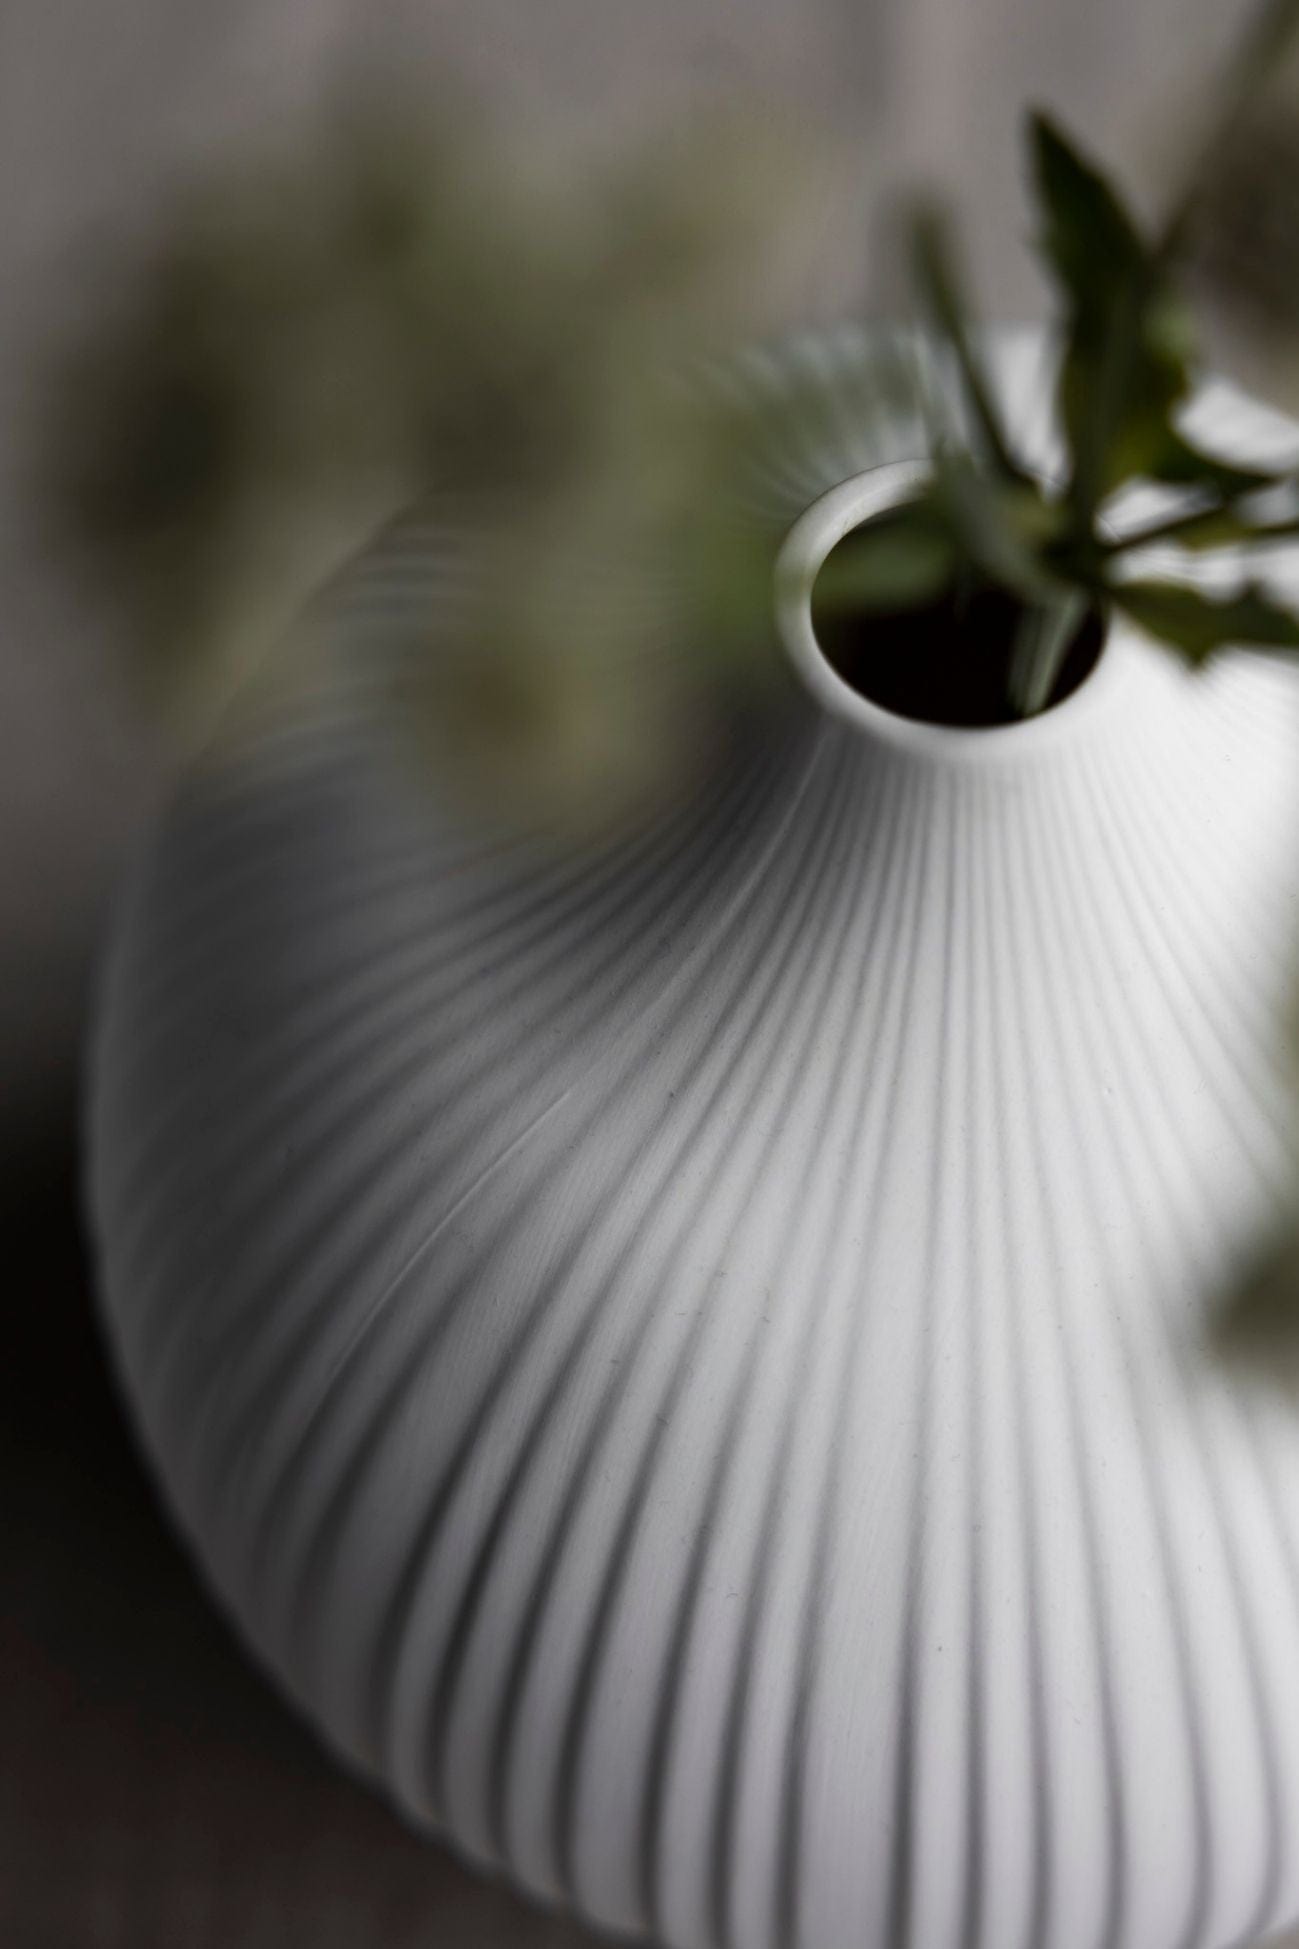 Storefactory Scandinavia Frobacken Frobacken - Vaso di design in ceramica opaca bianca in stile scandinavo | Storefactory Scandinavia